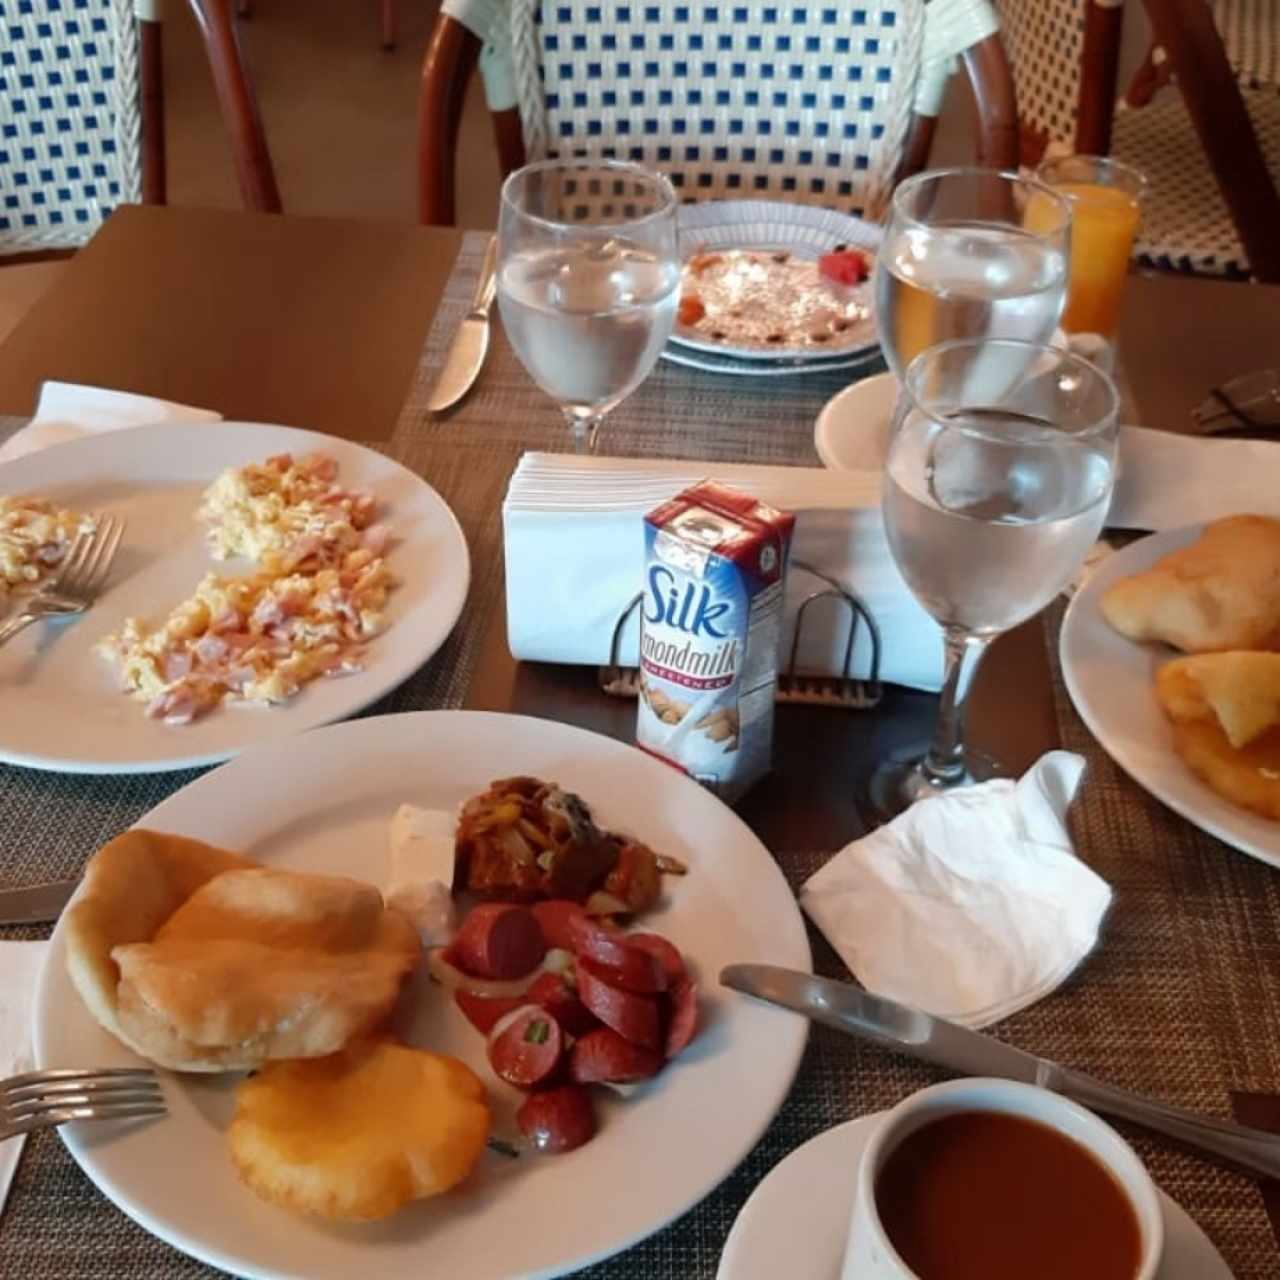 Desayuno típico panameño 🥳